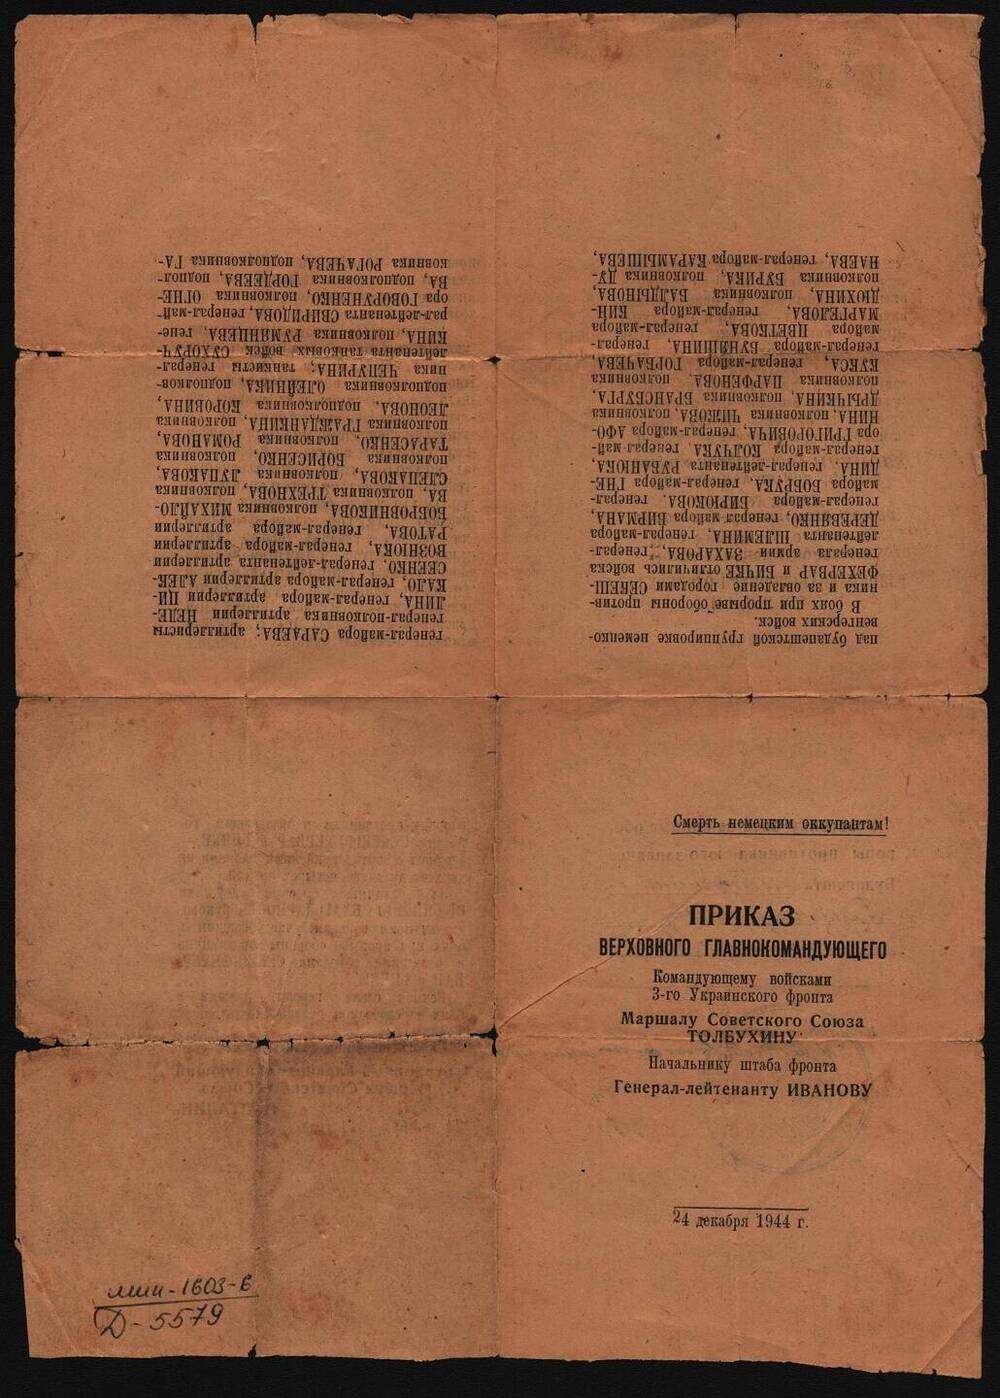 Приказ Верховного главнокомандующего маршалу Советского Союза Толбухину и генерал-лейтенанту Иванову.